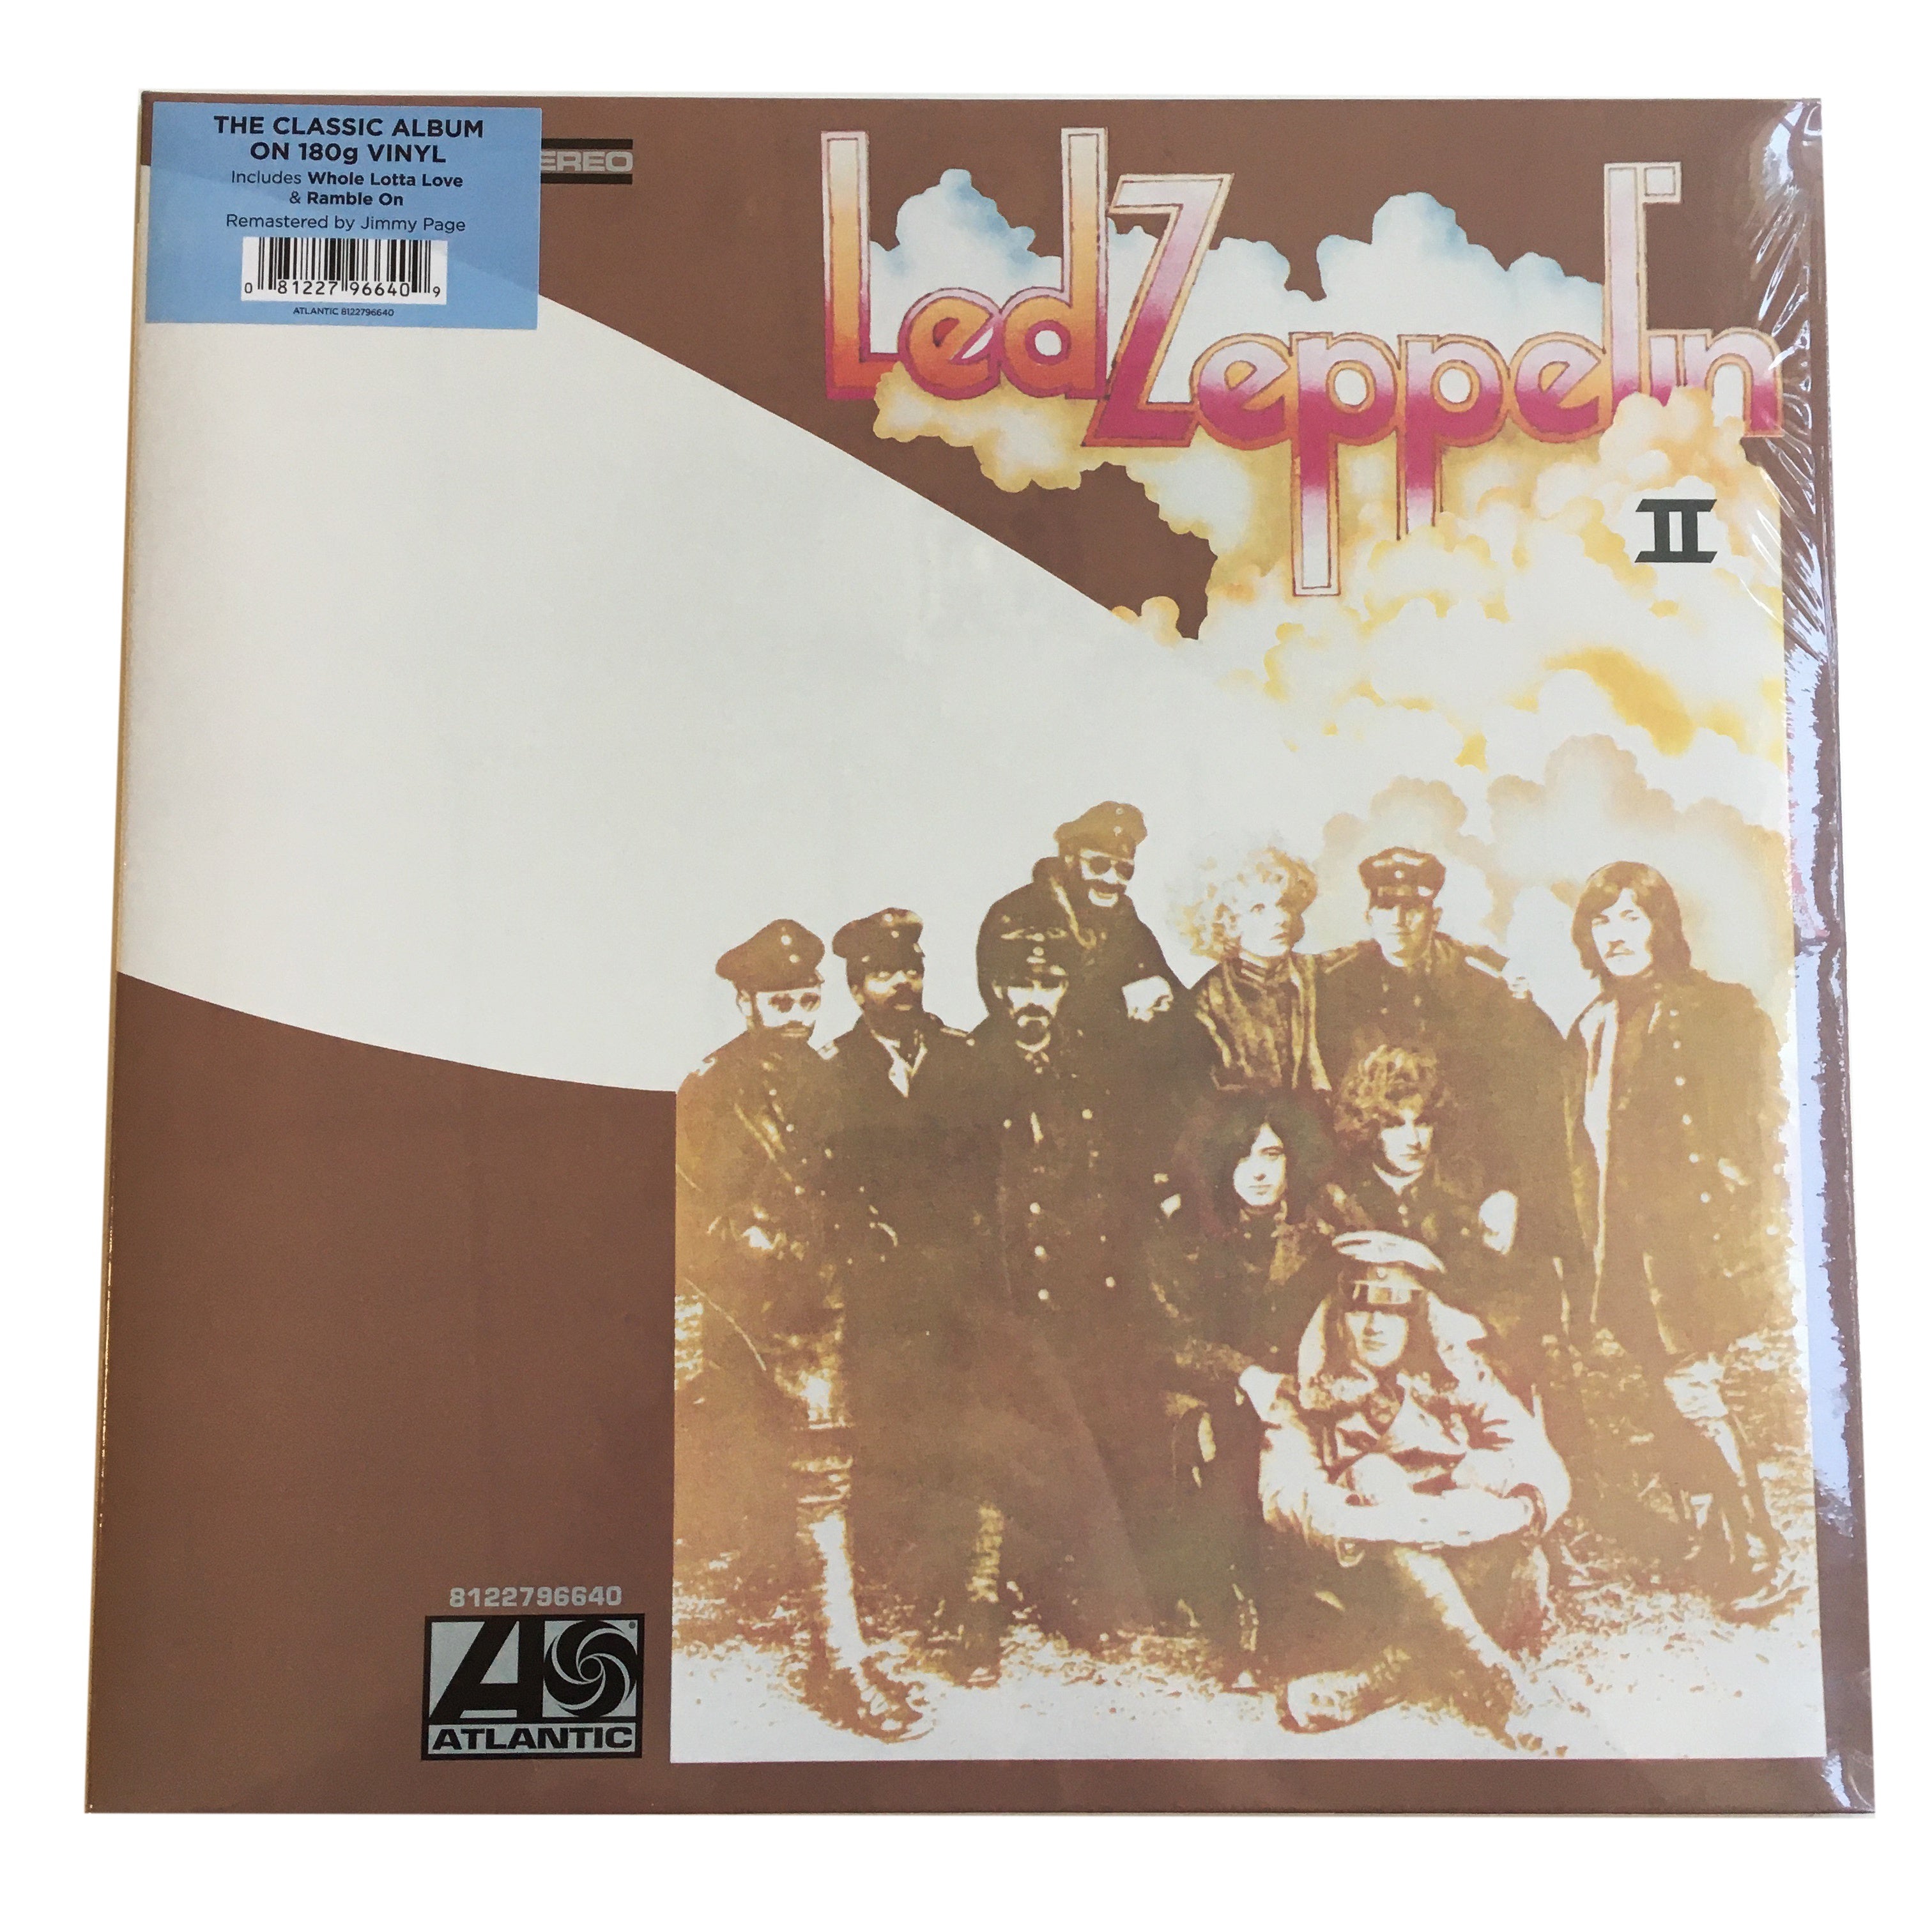 indsprøjte Martyr mærkelig Led Zeppelin: II 12" – Sorry State Records